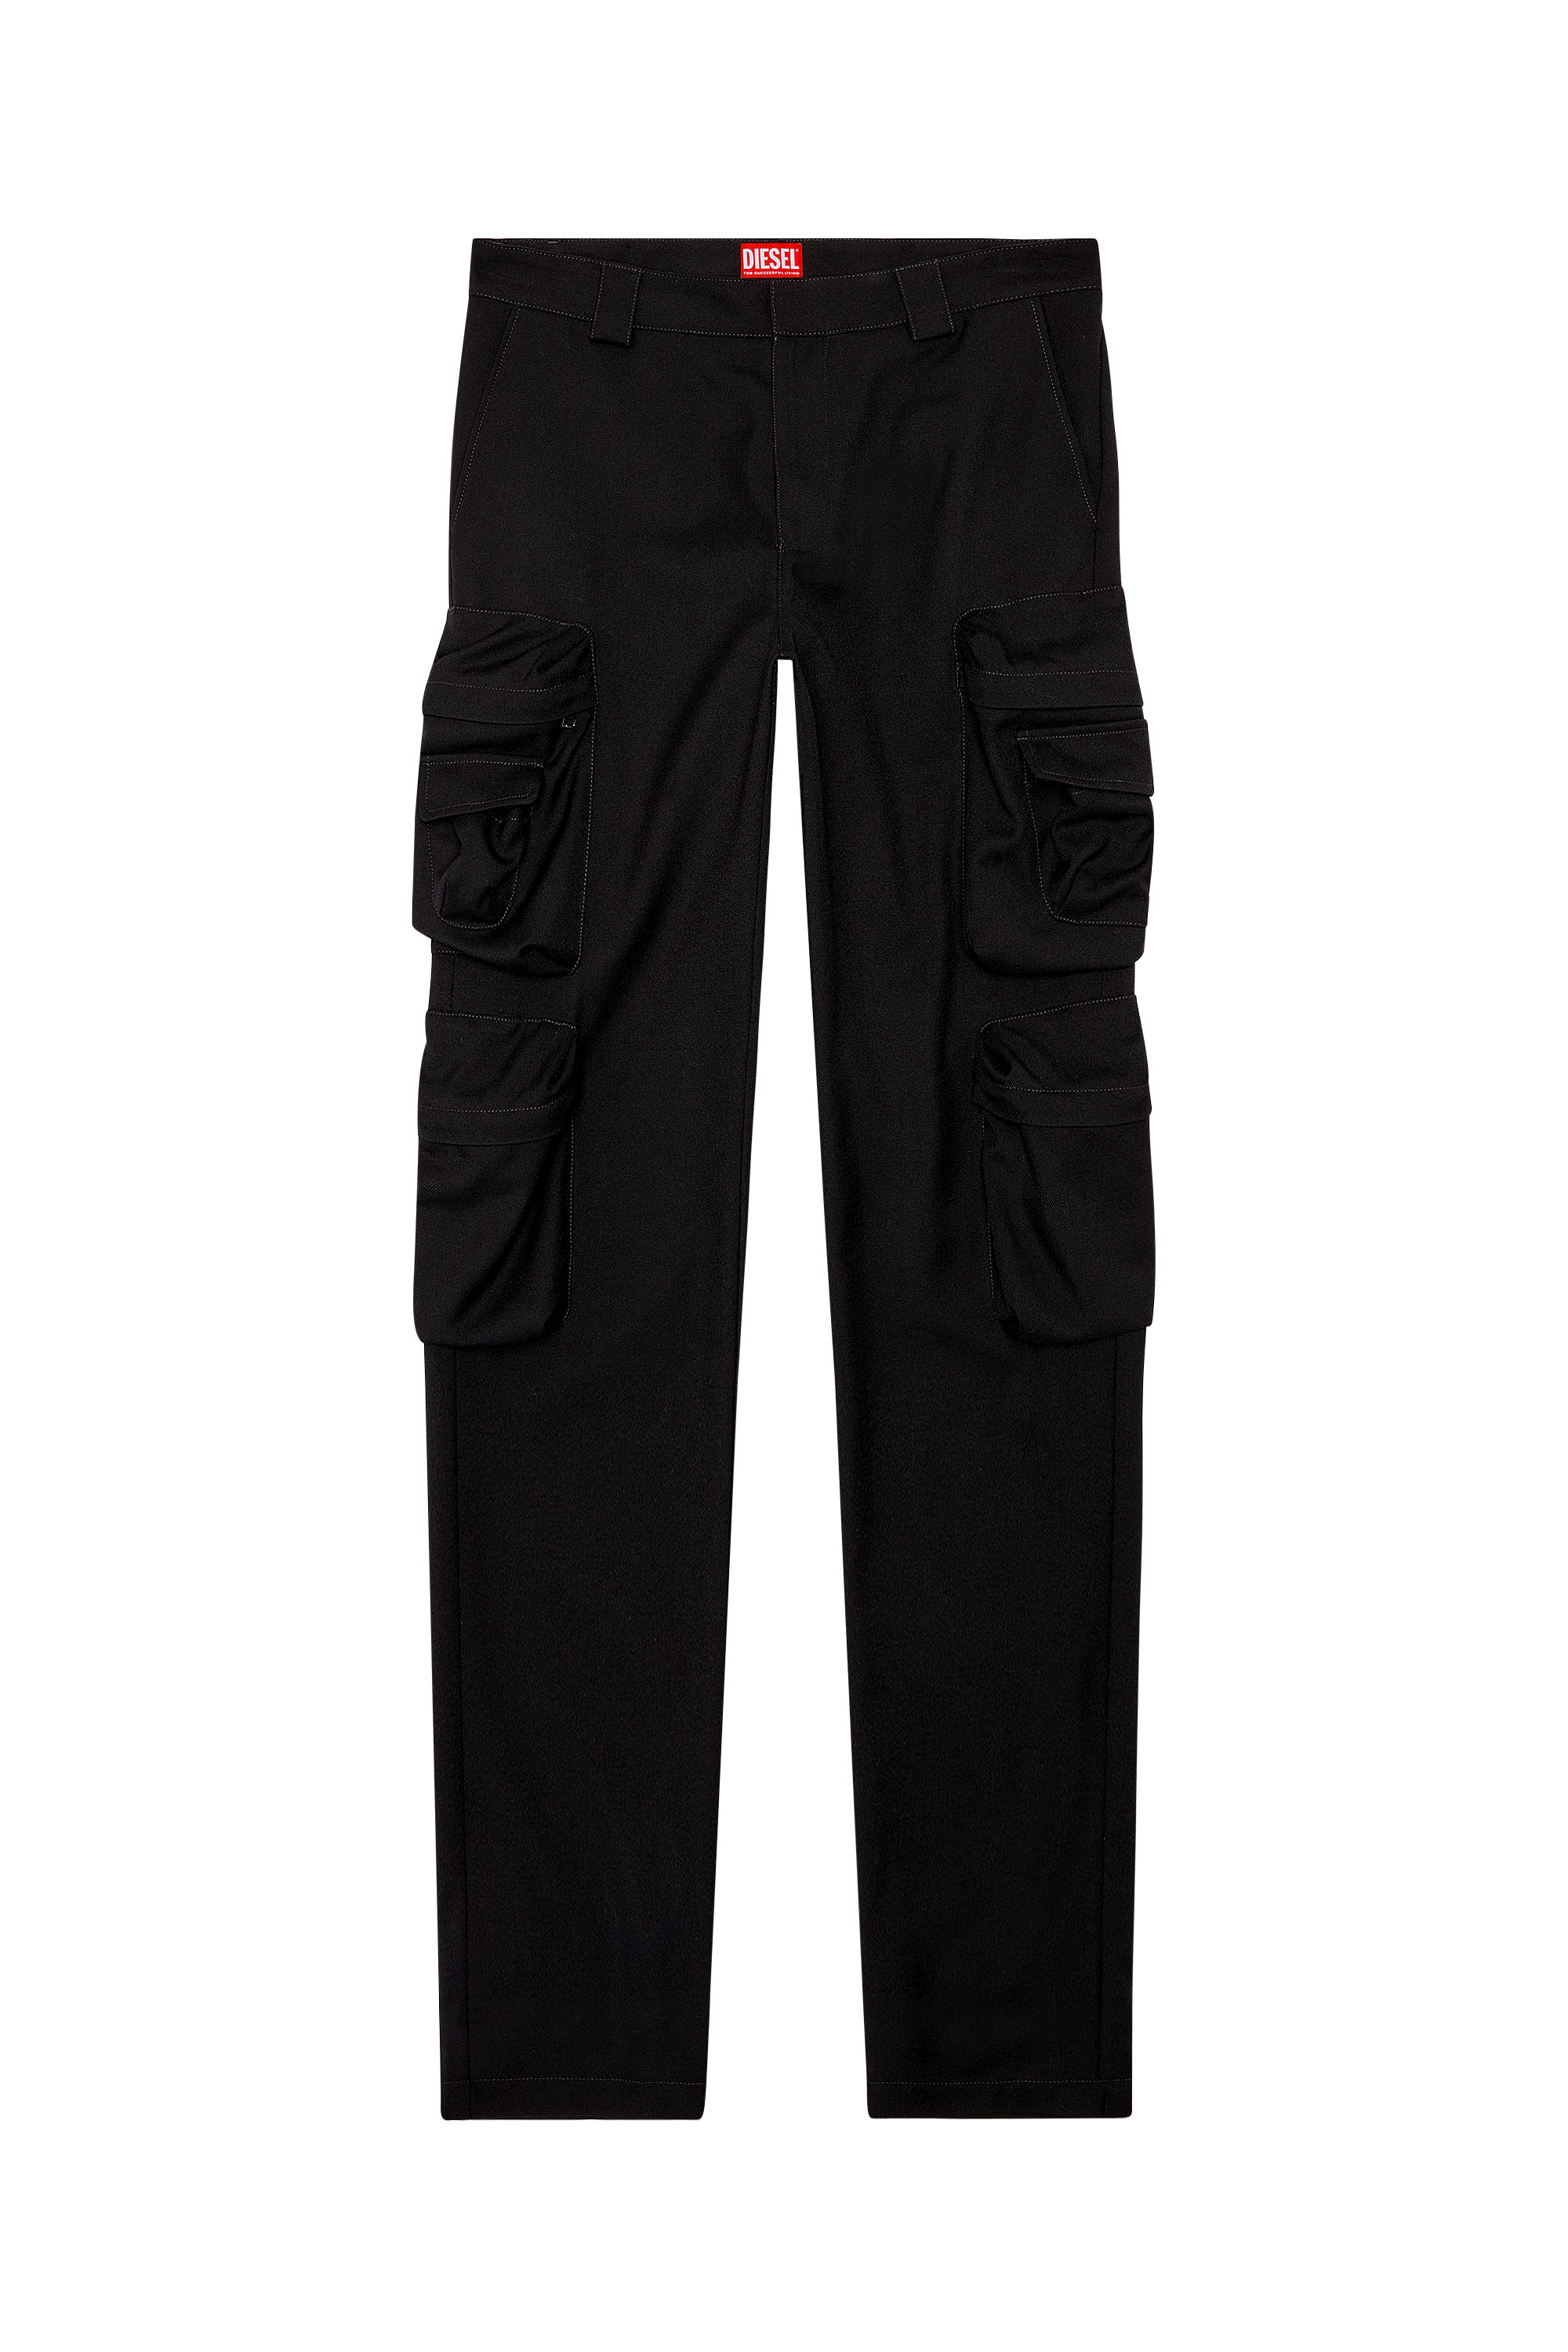 Diesel - P-LANKA, Man Cargo pants in cool wool in Black - Image 3